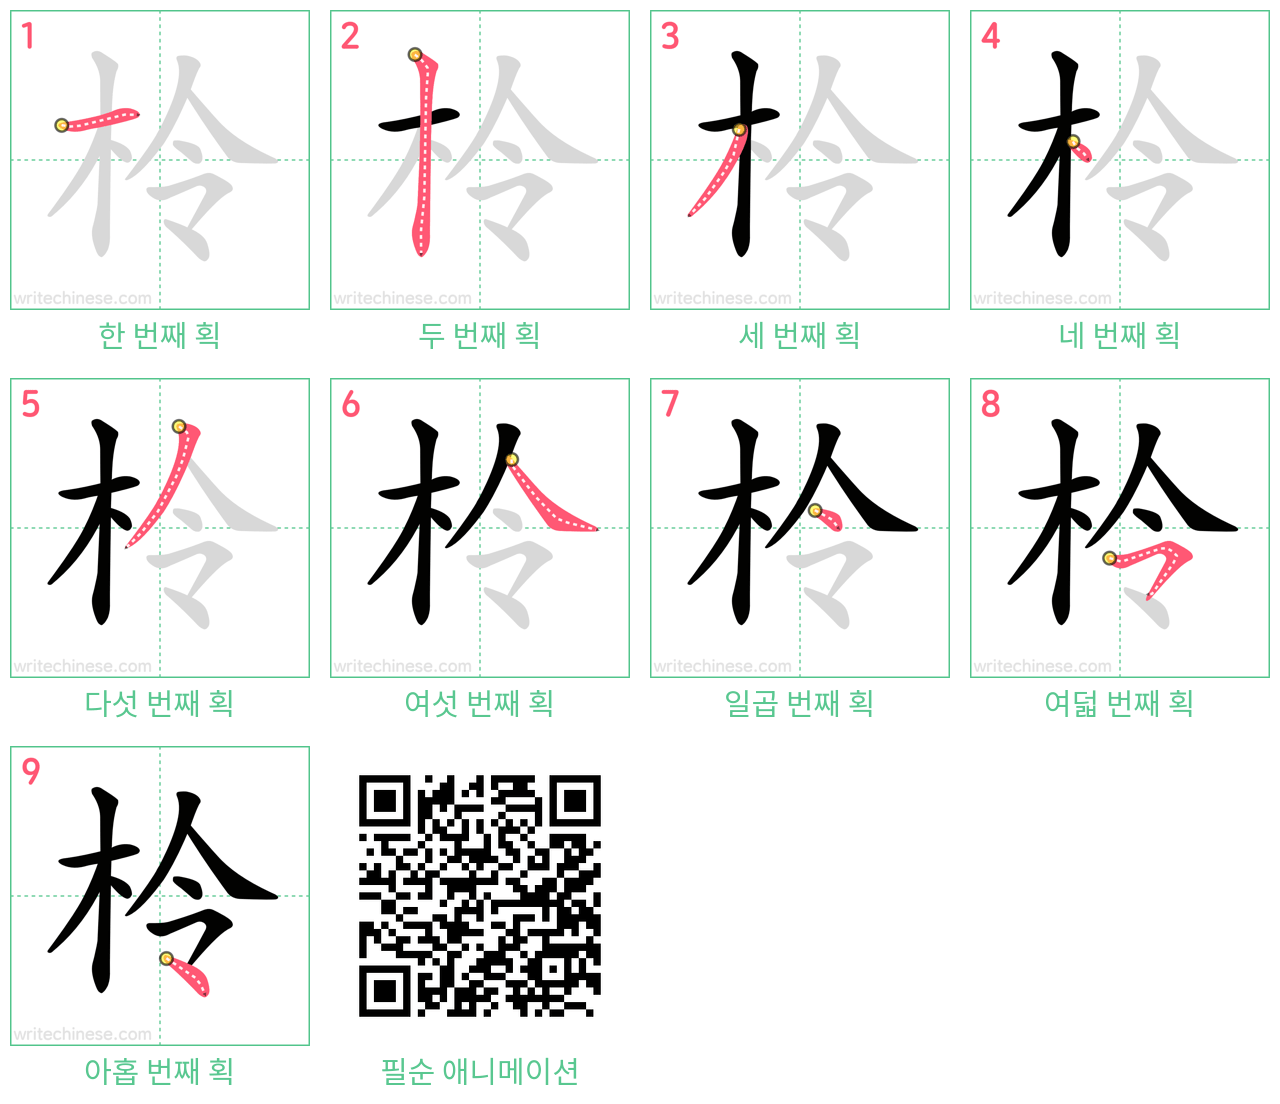 柃 step-by-step stroke order diagrams